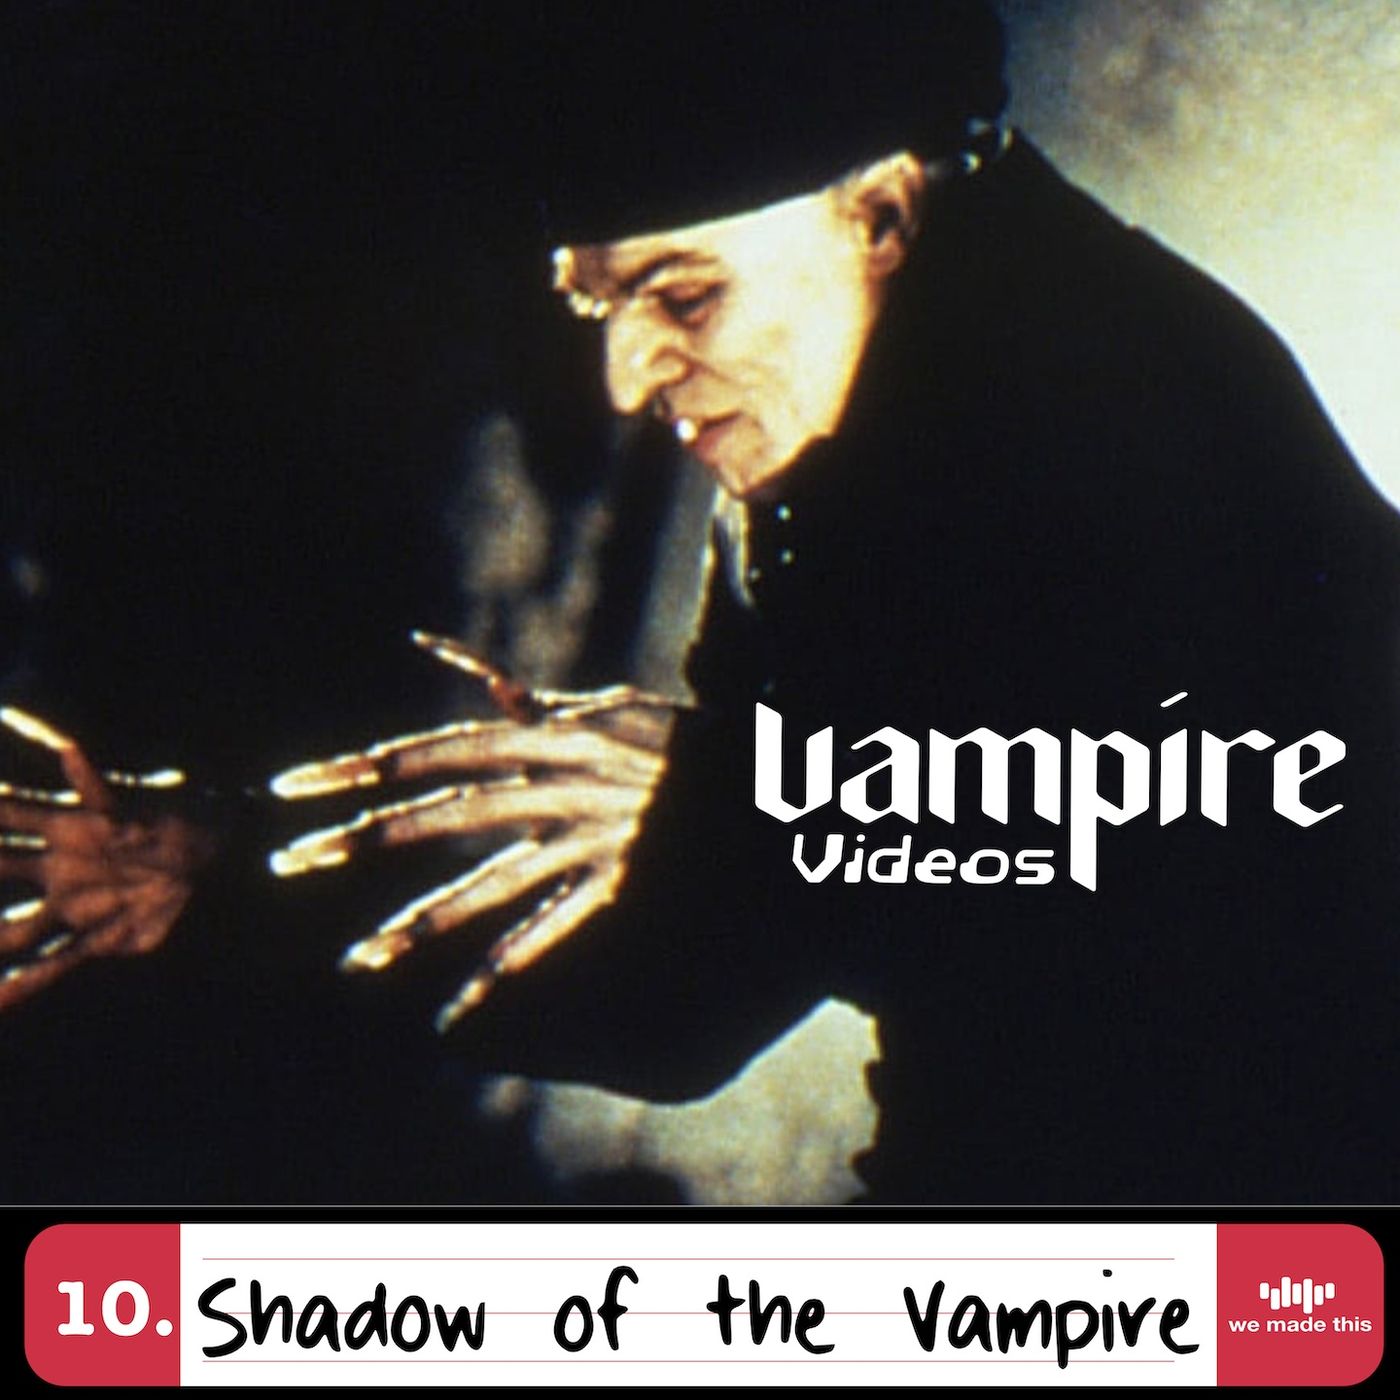 10. Shadow of the Vampire (2000) with Darren Mooney